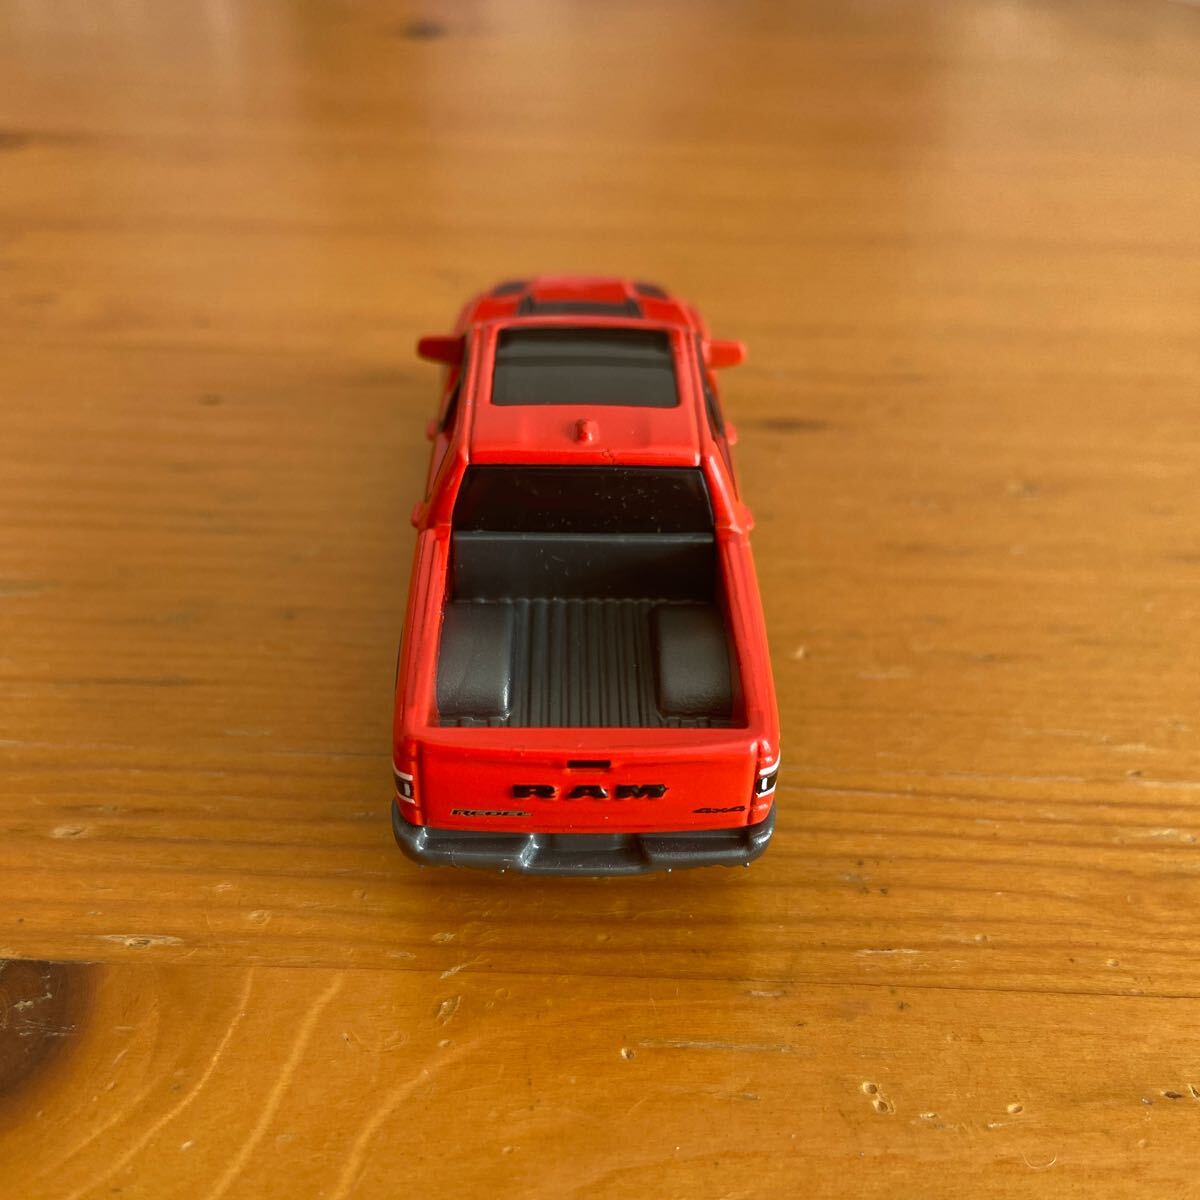 MATIHBOX 2020 Ram Rebel 4x4 トラック ミニカー ダイキャスト マッチボックス トミカサイズ 赤 Red_画像7